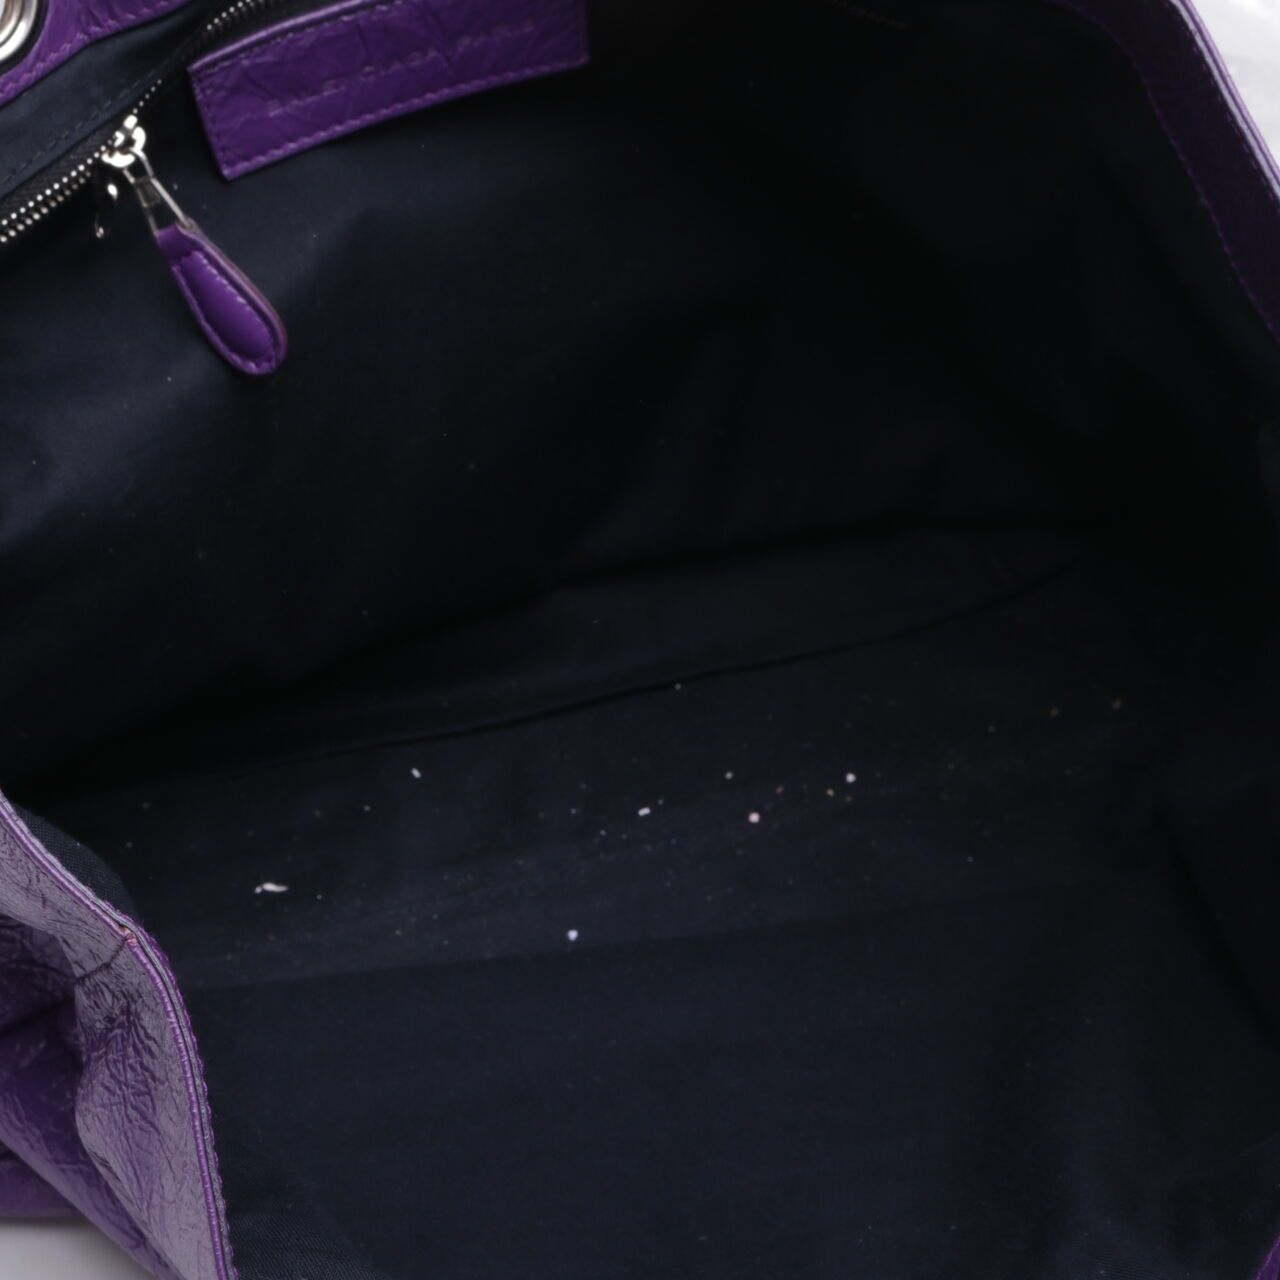 Balenciaga Purple Leather Tote Bag